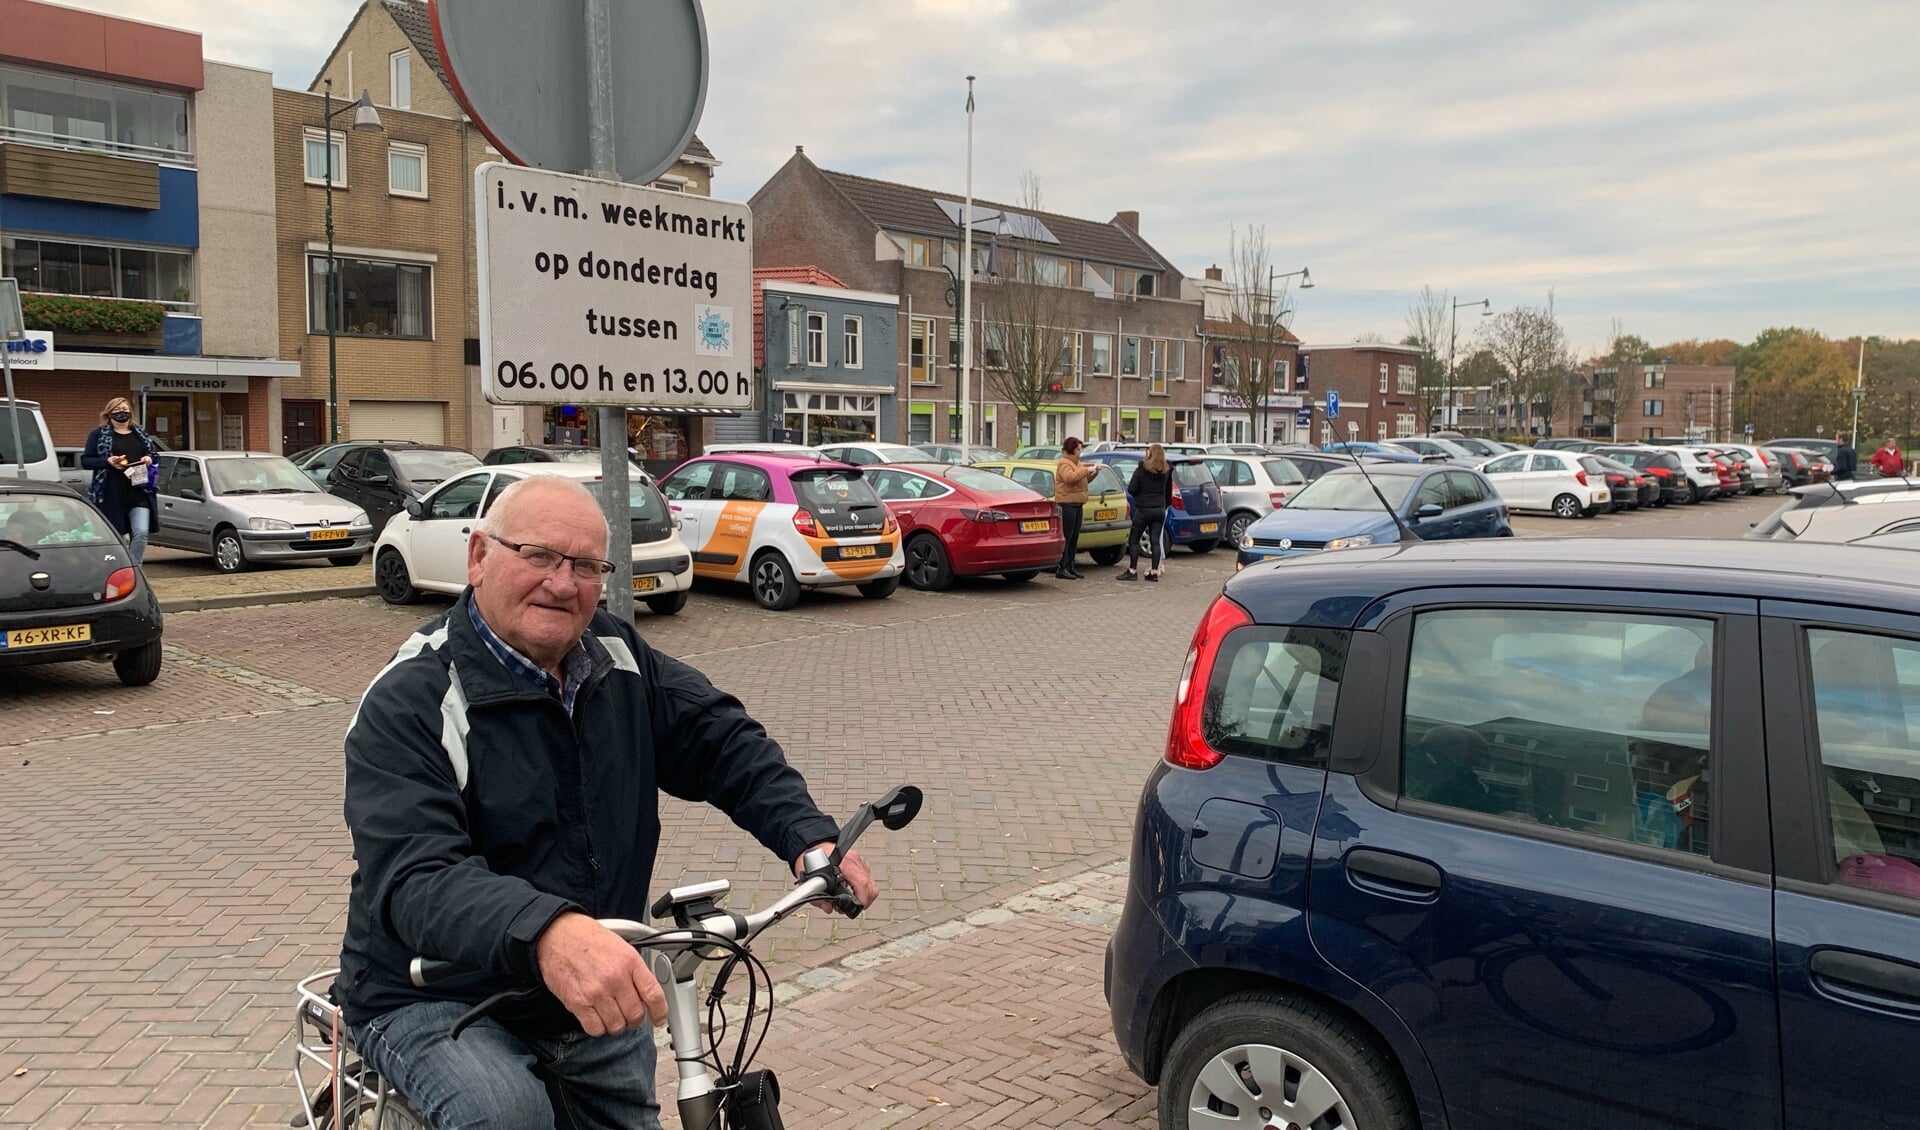 Op de fiets zet hij er geen op, maar verder heeft oud-Dinteloorder Wim Huijzer geen probleem met het dragen van een mondkapje.